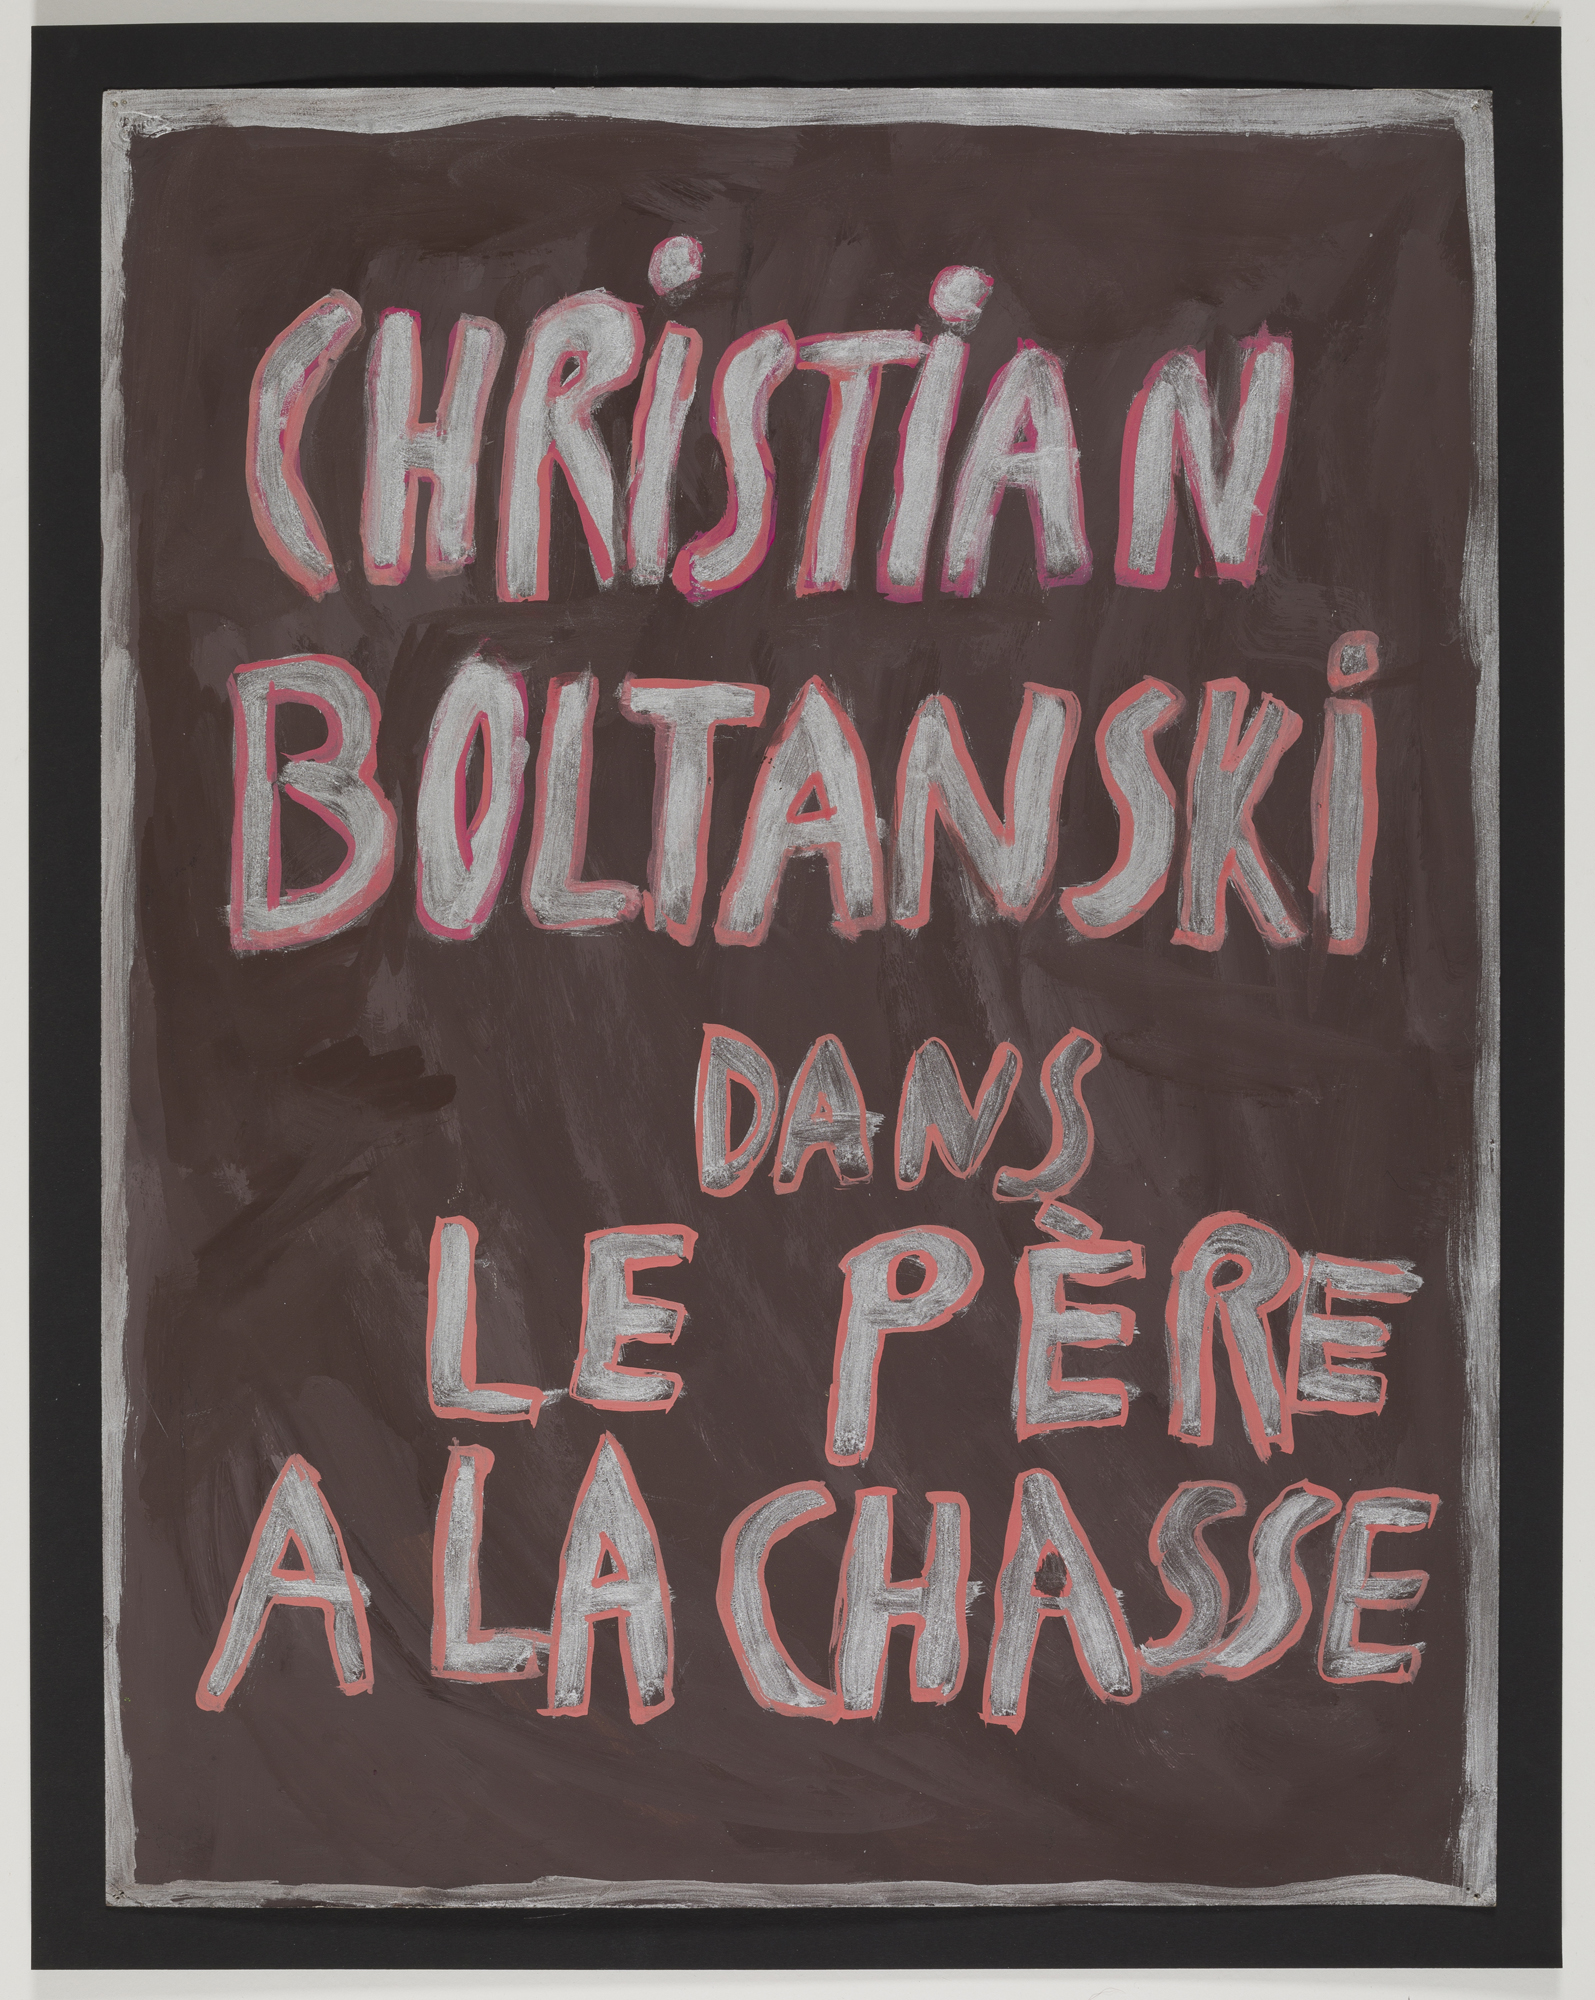 Christian Boltanski, CHRISTIAN BOLTANSKI DANS LE PÈRE À LA CHASSE, 1974/75